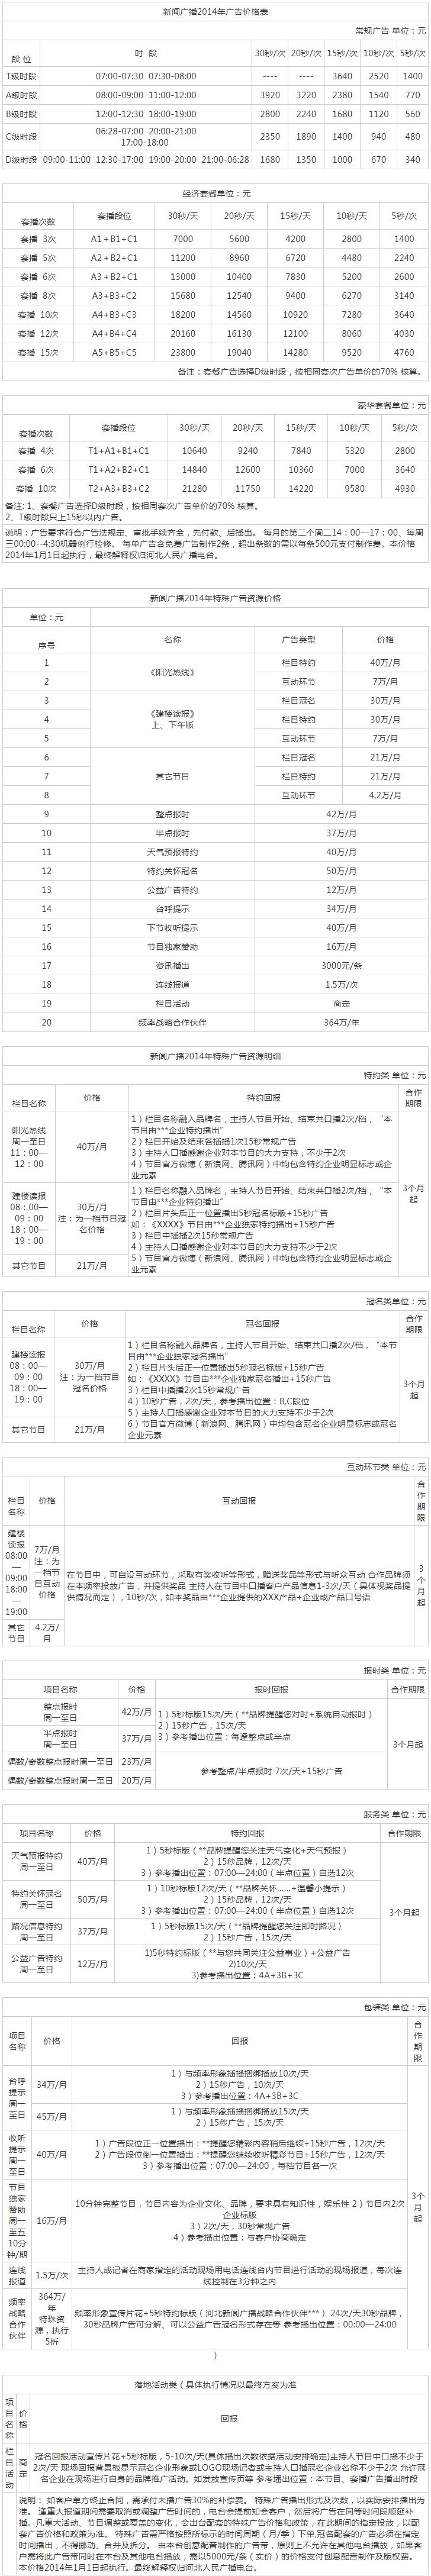 2014河北人民广播电台新闻广播FM104.3广告报价表.png